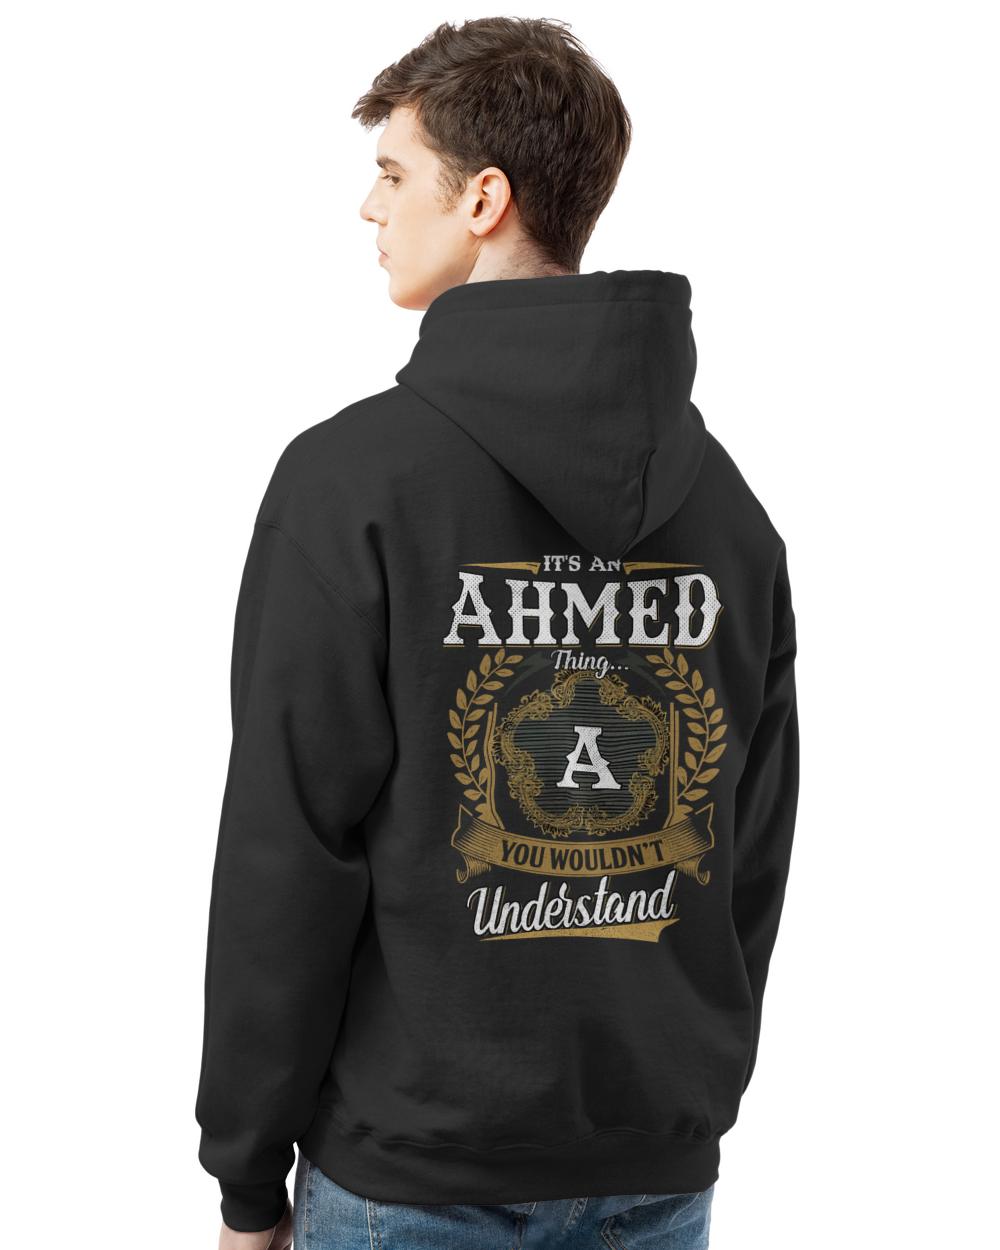 AHMED-13K-1-01